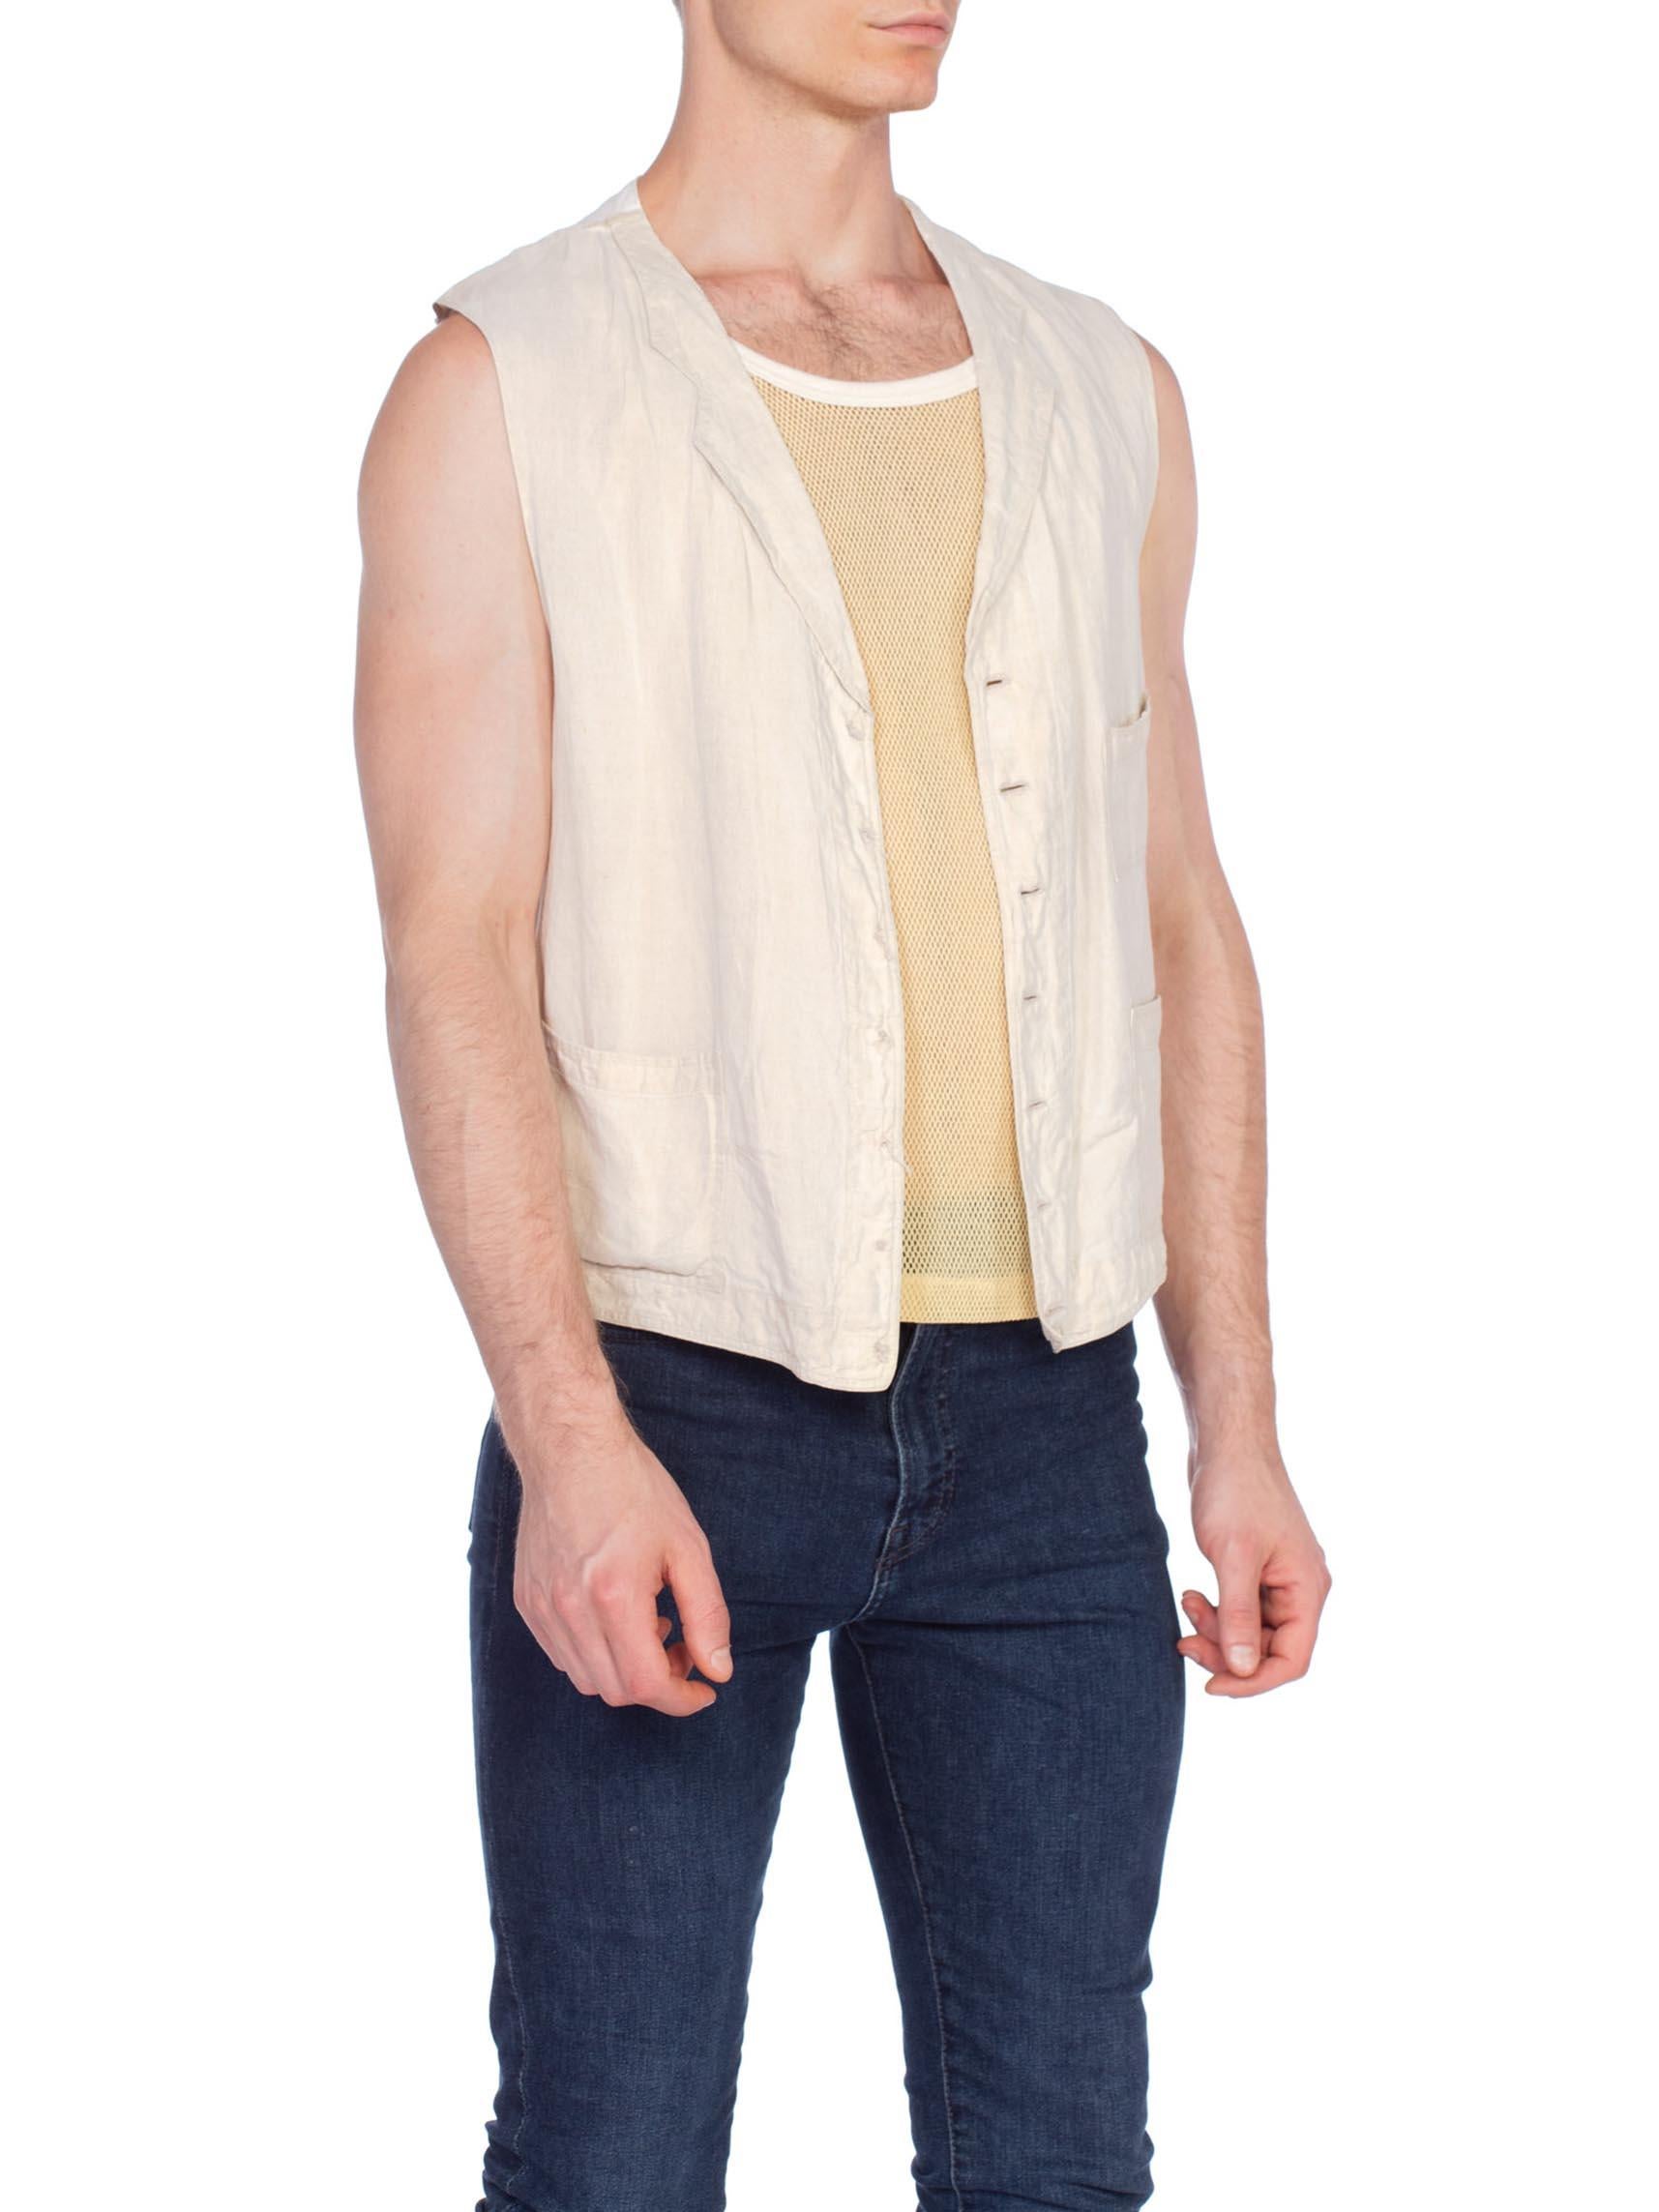 Rare Mens Antique 1910/20's Linen And Cotton Vest